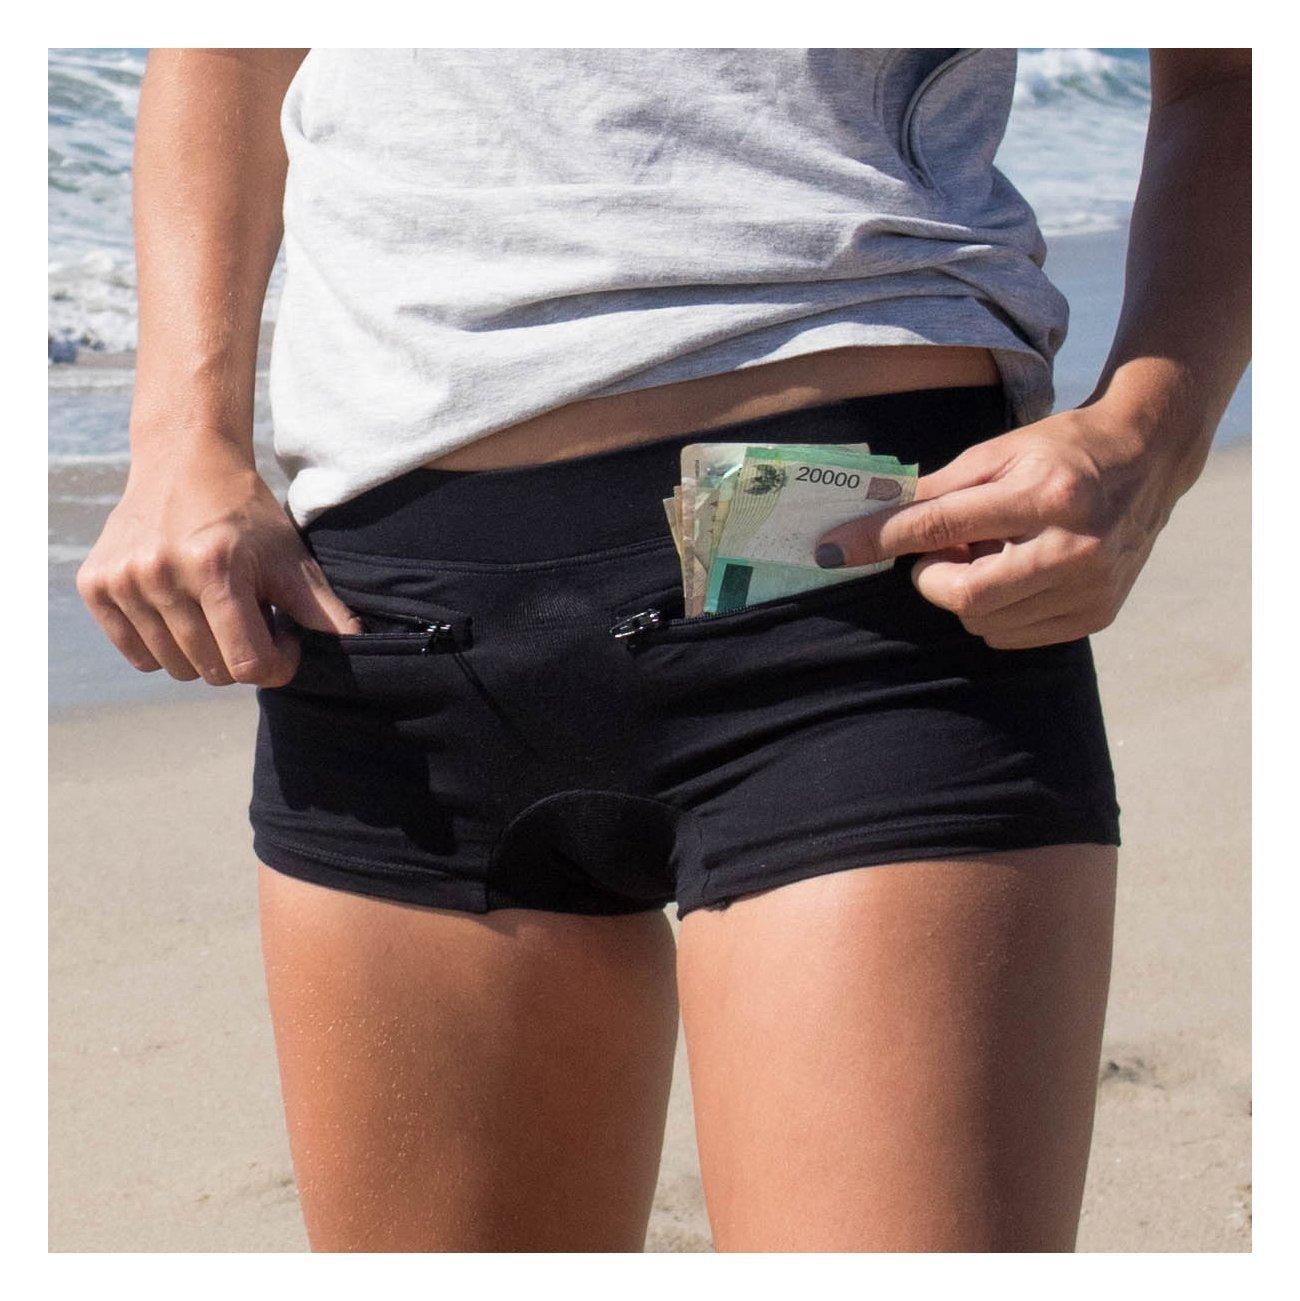 Women's Cotton Underpants with Secret Pockets